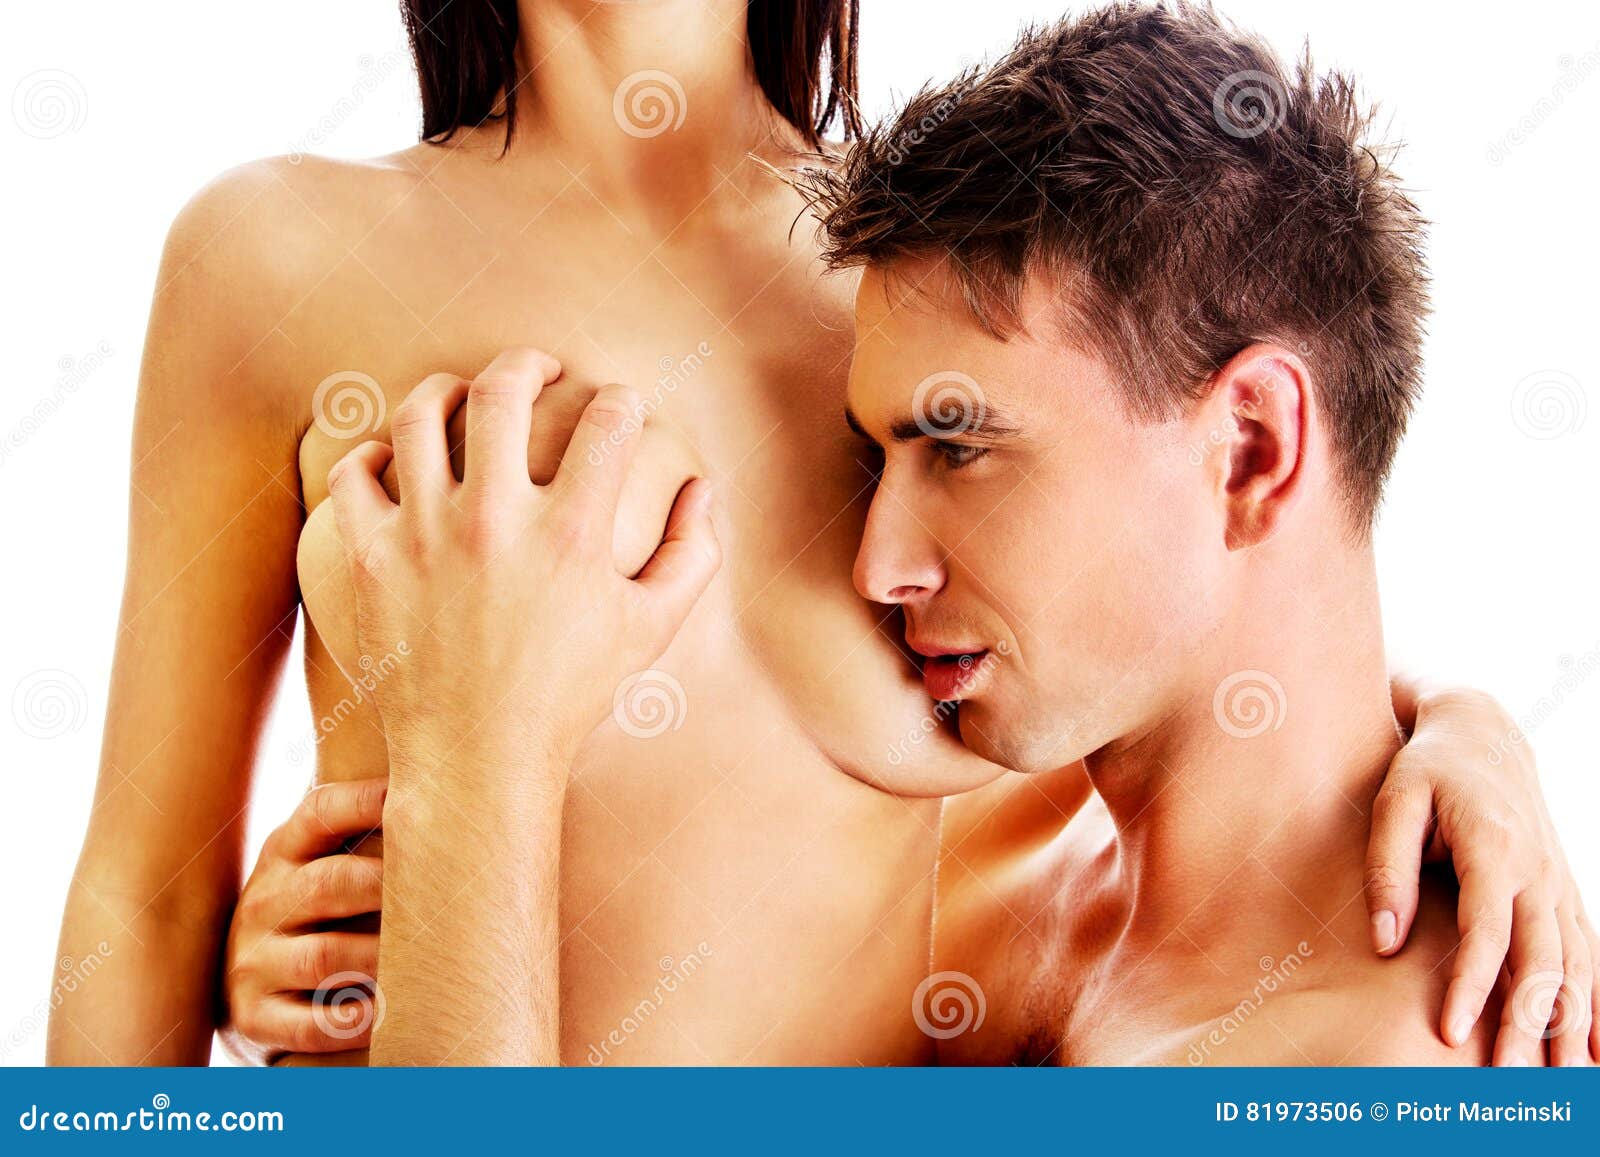 парни с женскими грудями фото фото 31